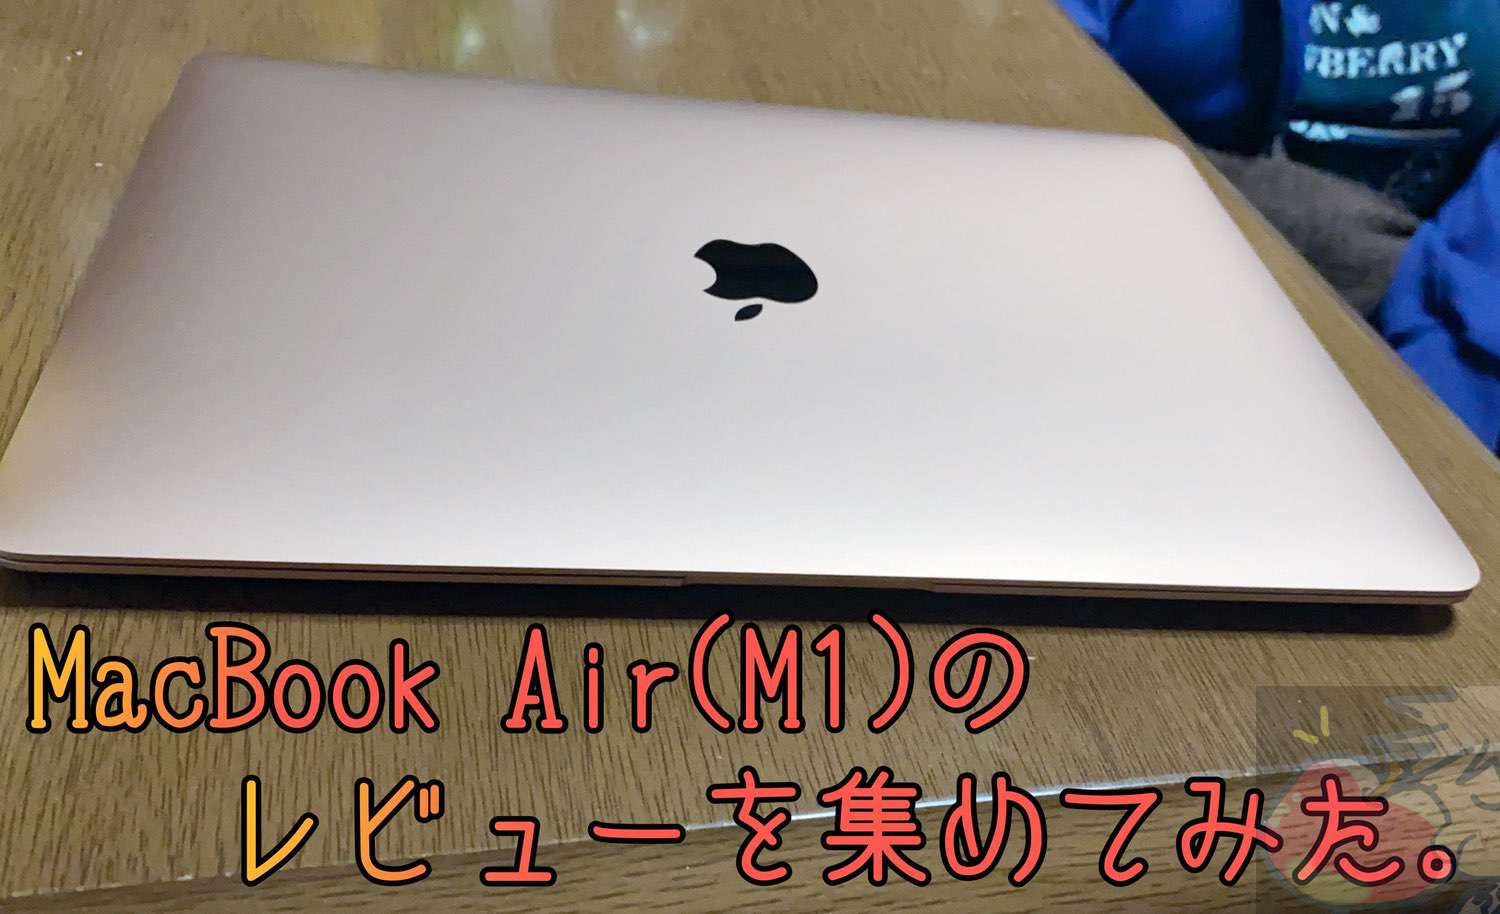 美品 macbook air m1 8g 256gb スペースグレイ 保証残あり